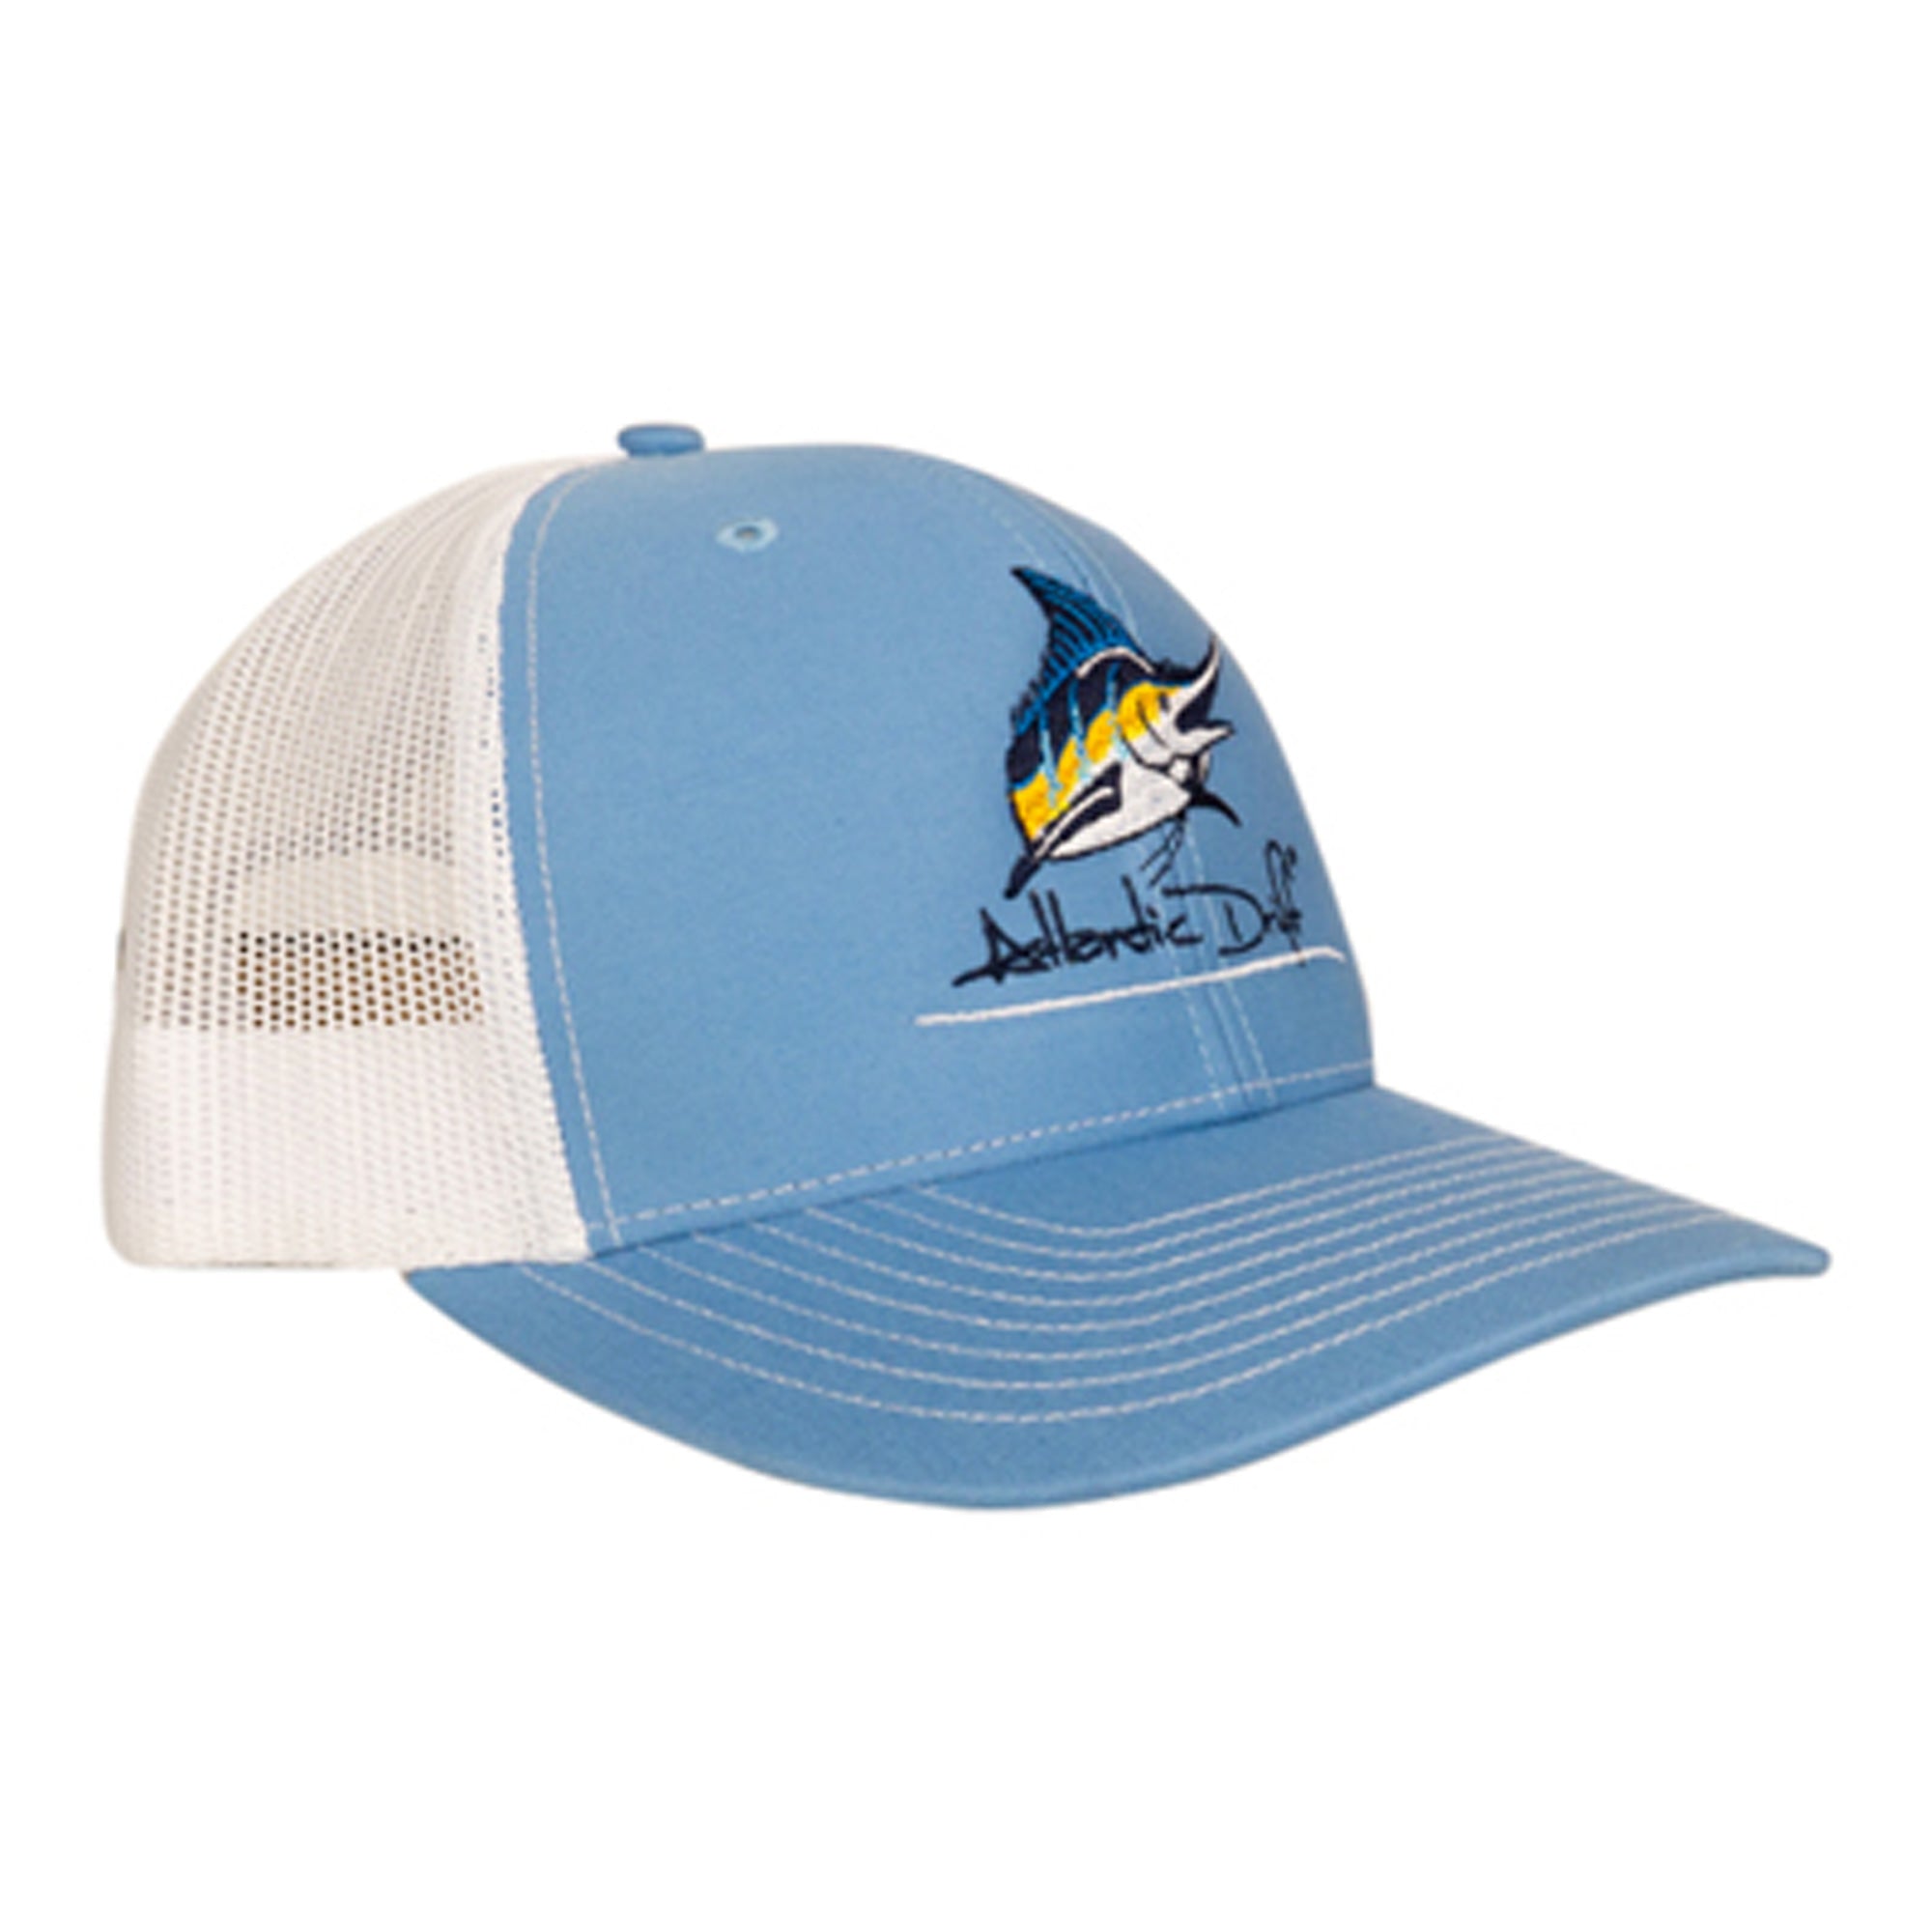 Marlin Logo - Trucker Hat